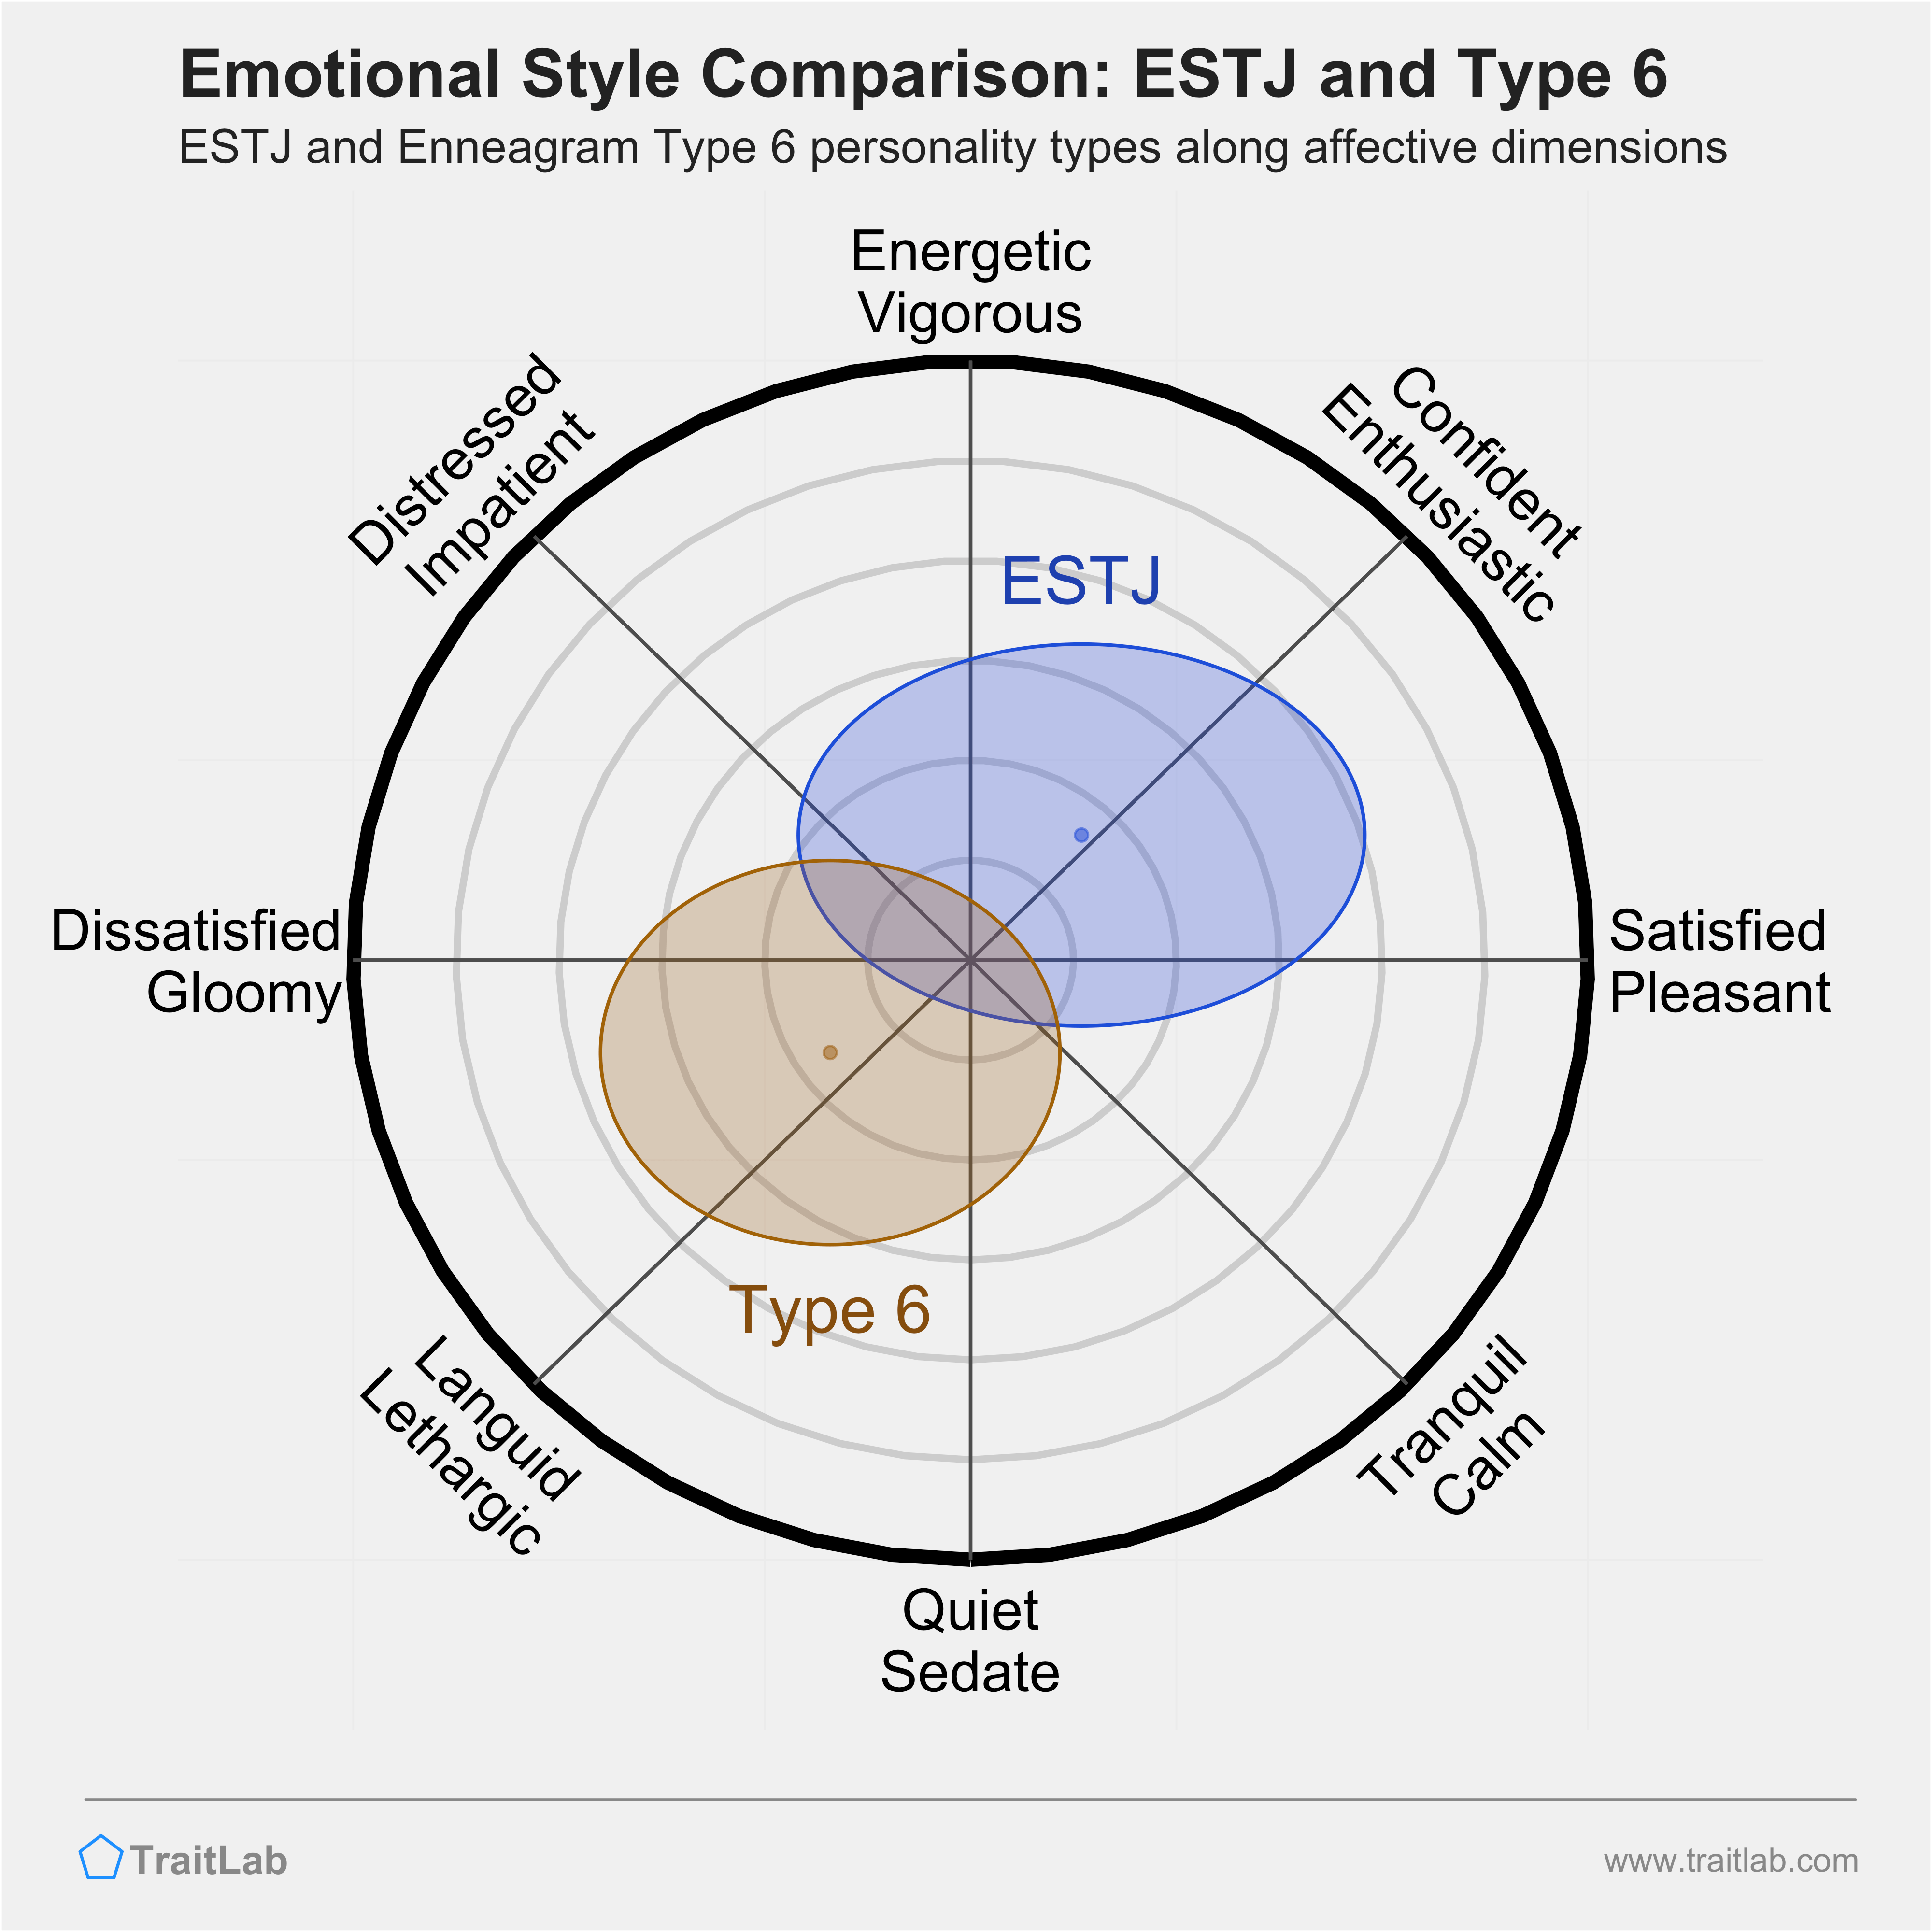 ESTJ and Type 6 comparison across emotional (affective) dimensions